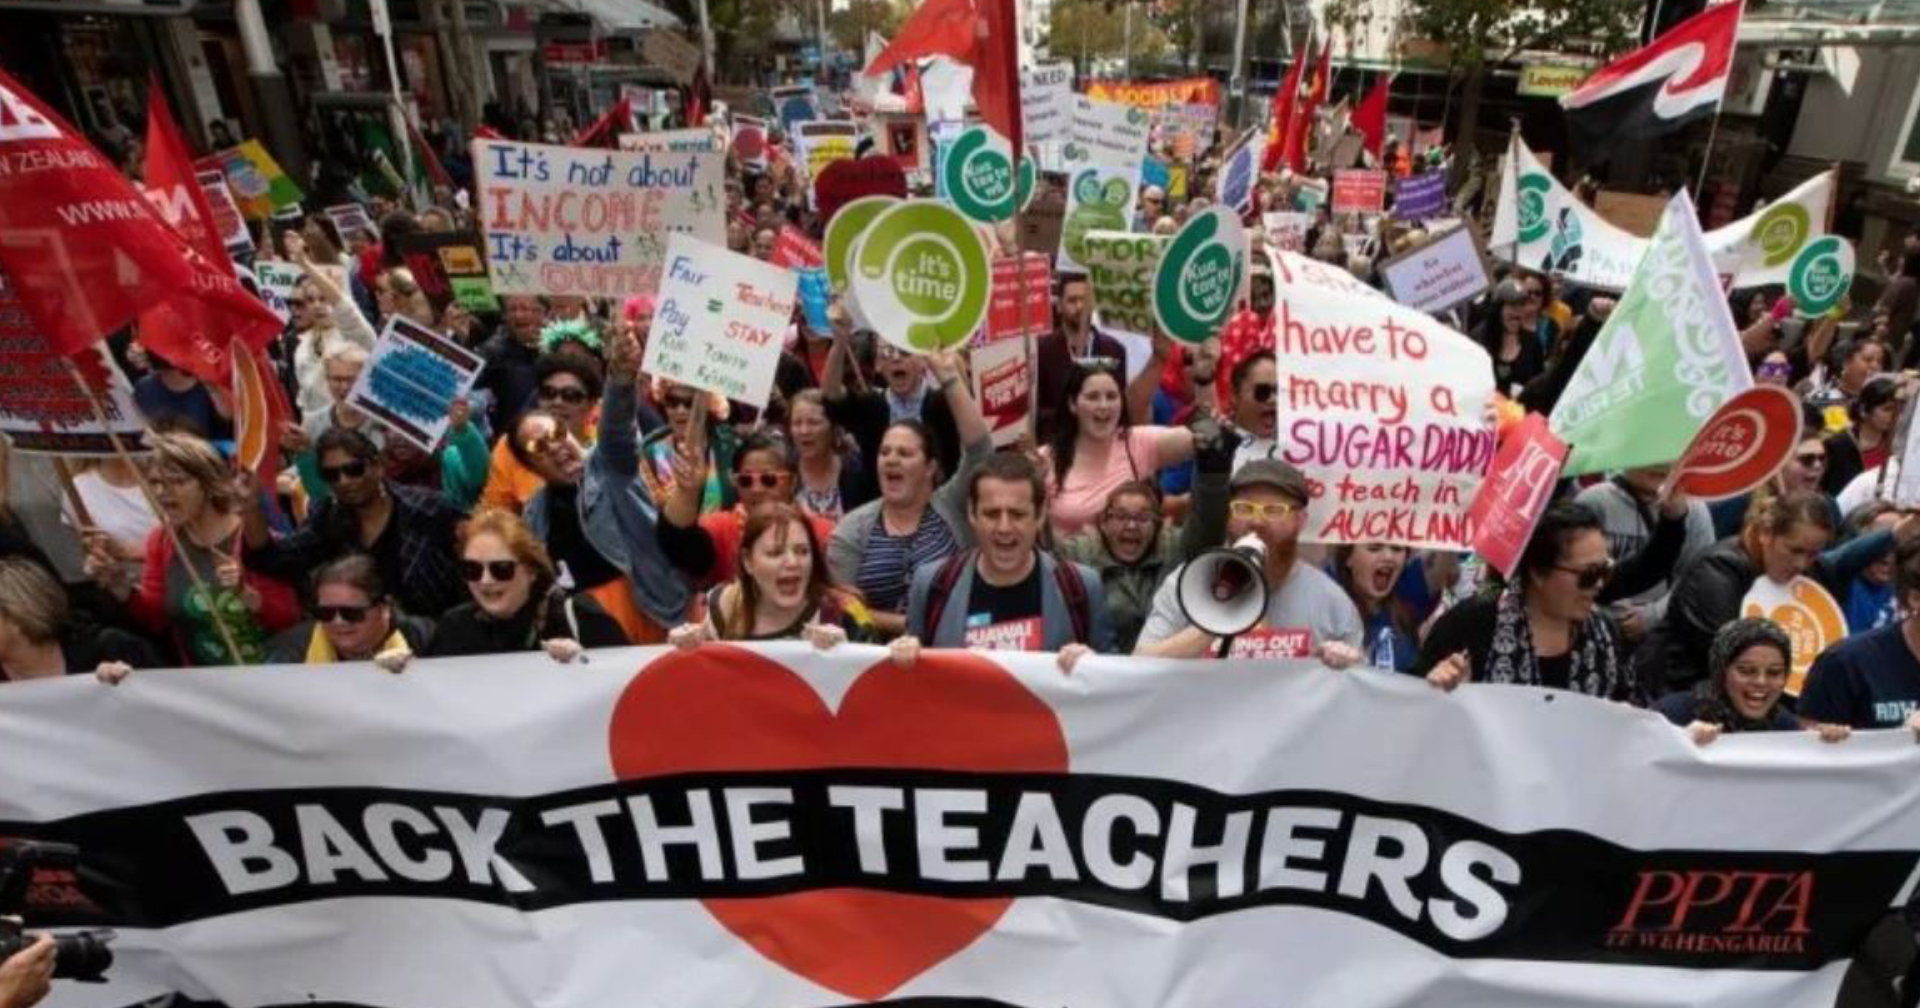 ครูในนิวซีแลนด์หลายหมื่นคน รวมตัวประท้วงขอขึ้นค่าจ้าง หลังค่าครองชีพในประเทศเพิ่มสูงขึ้น